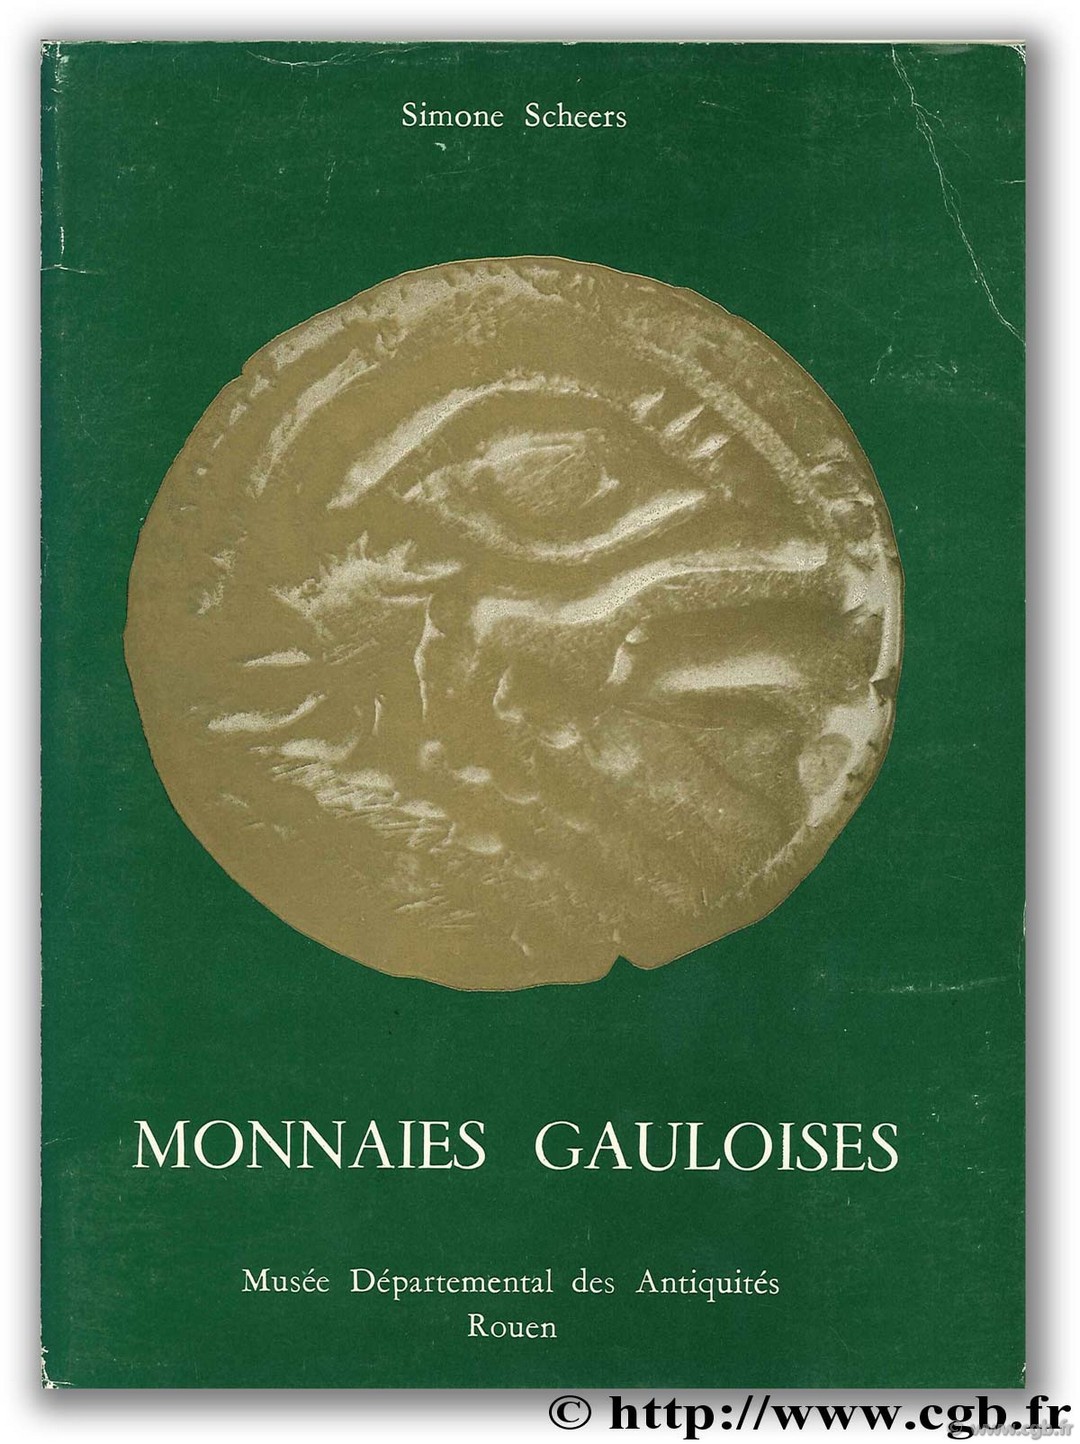 Monnaies gauloises, Musée Départemental des Antiquités, Rouen SCHEERS S., DELAPORTE J.